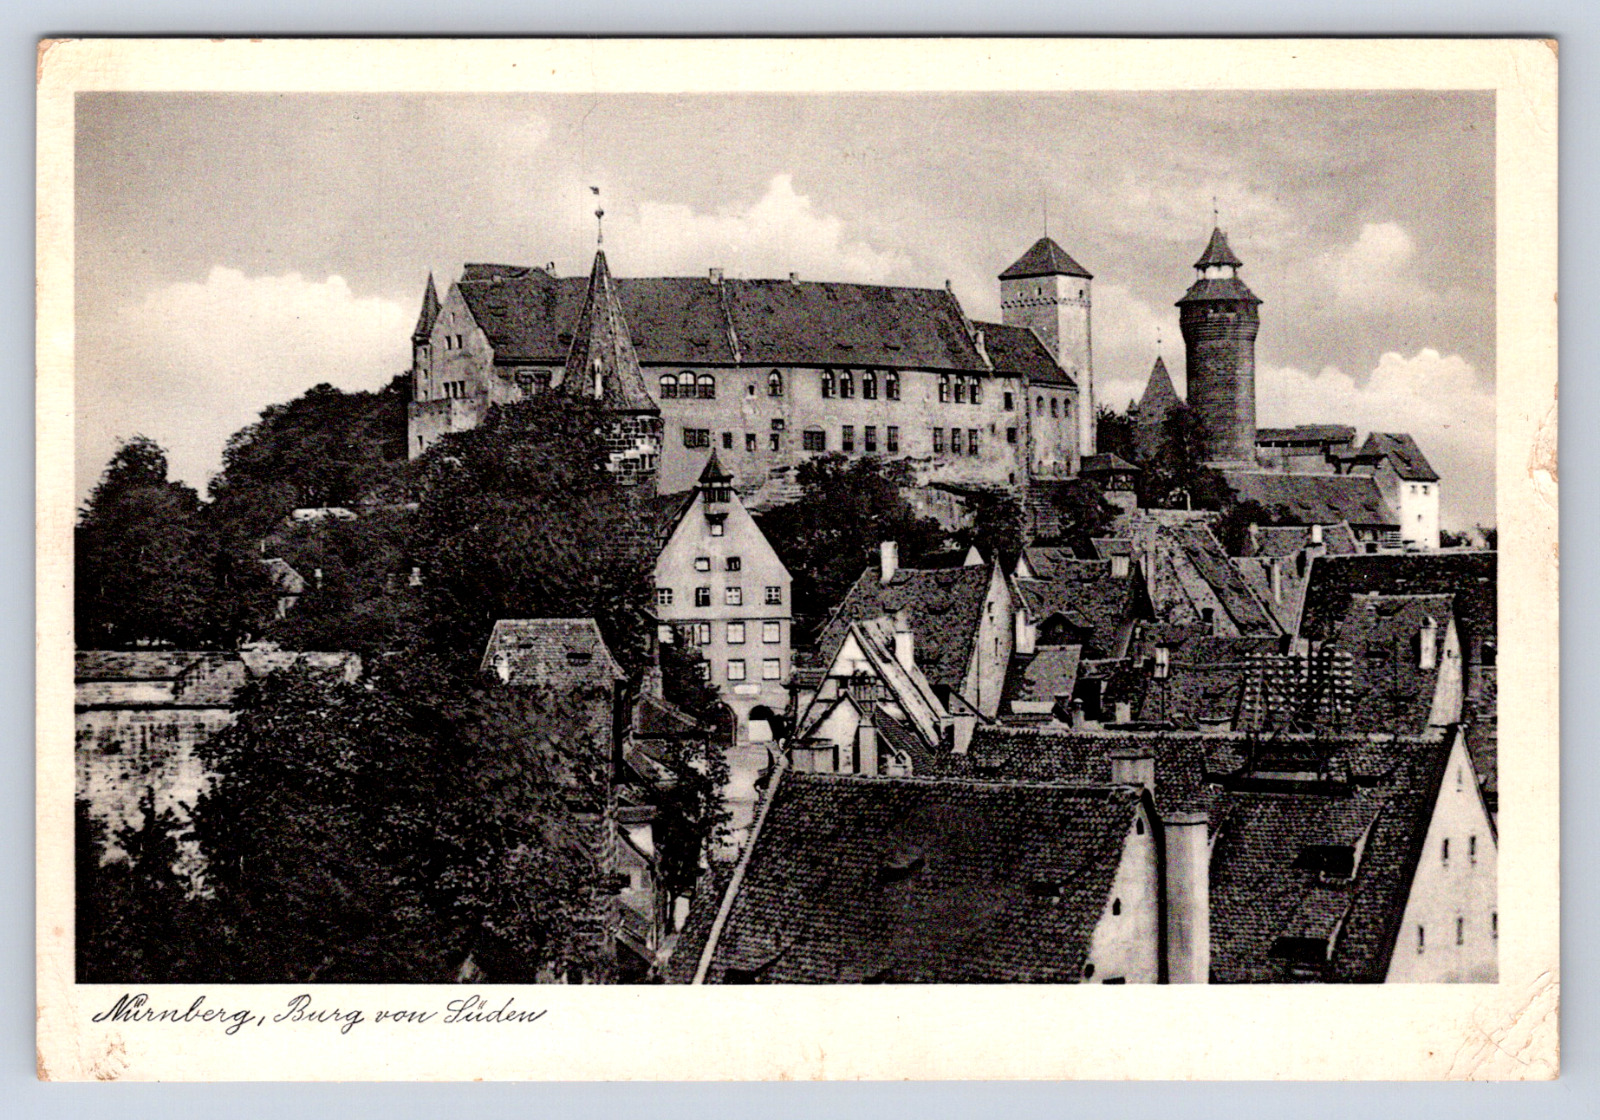 Vintage Postcard Nürnberg Burg von Luden Germany